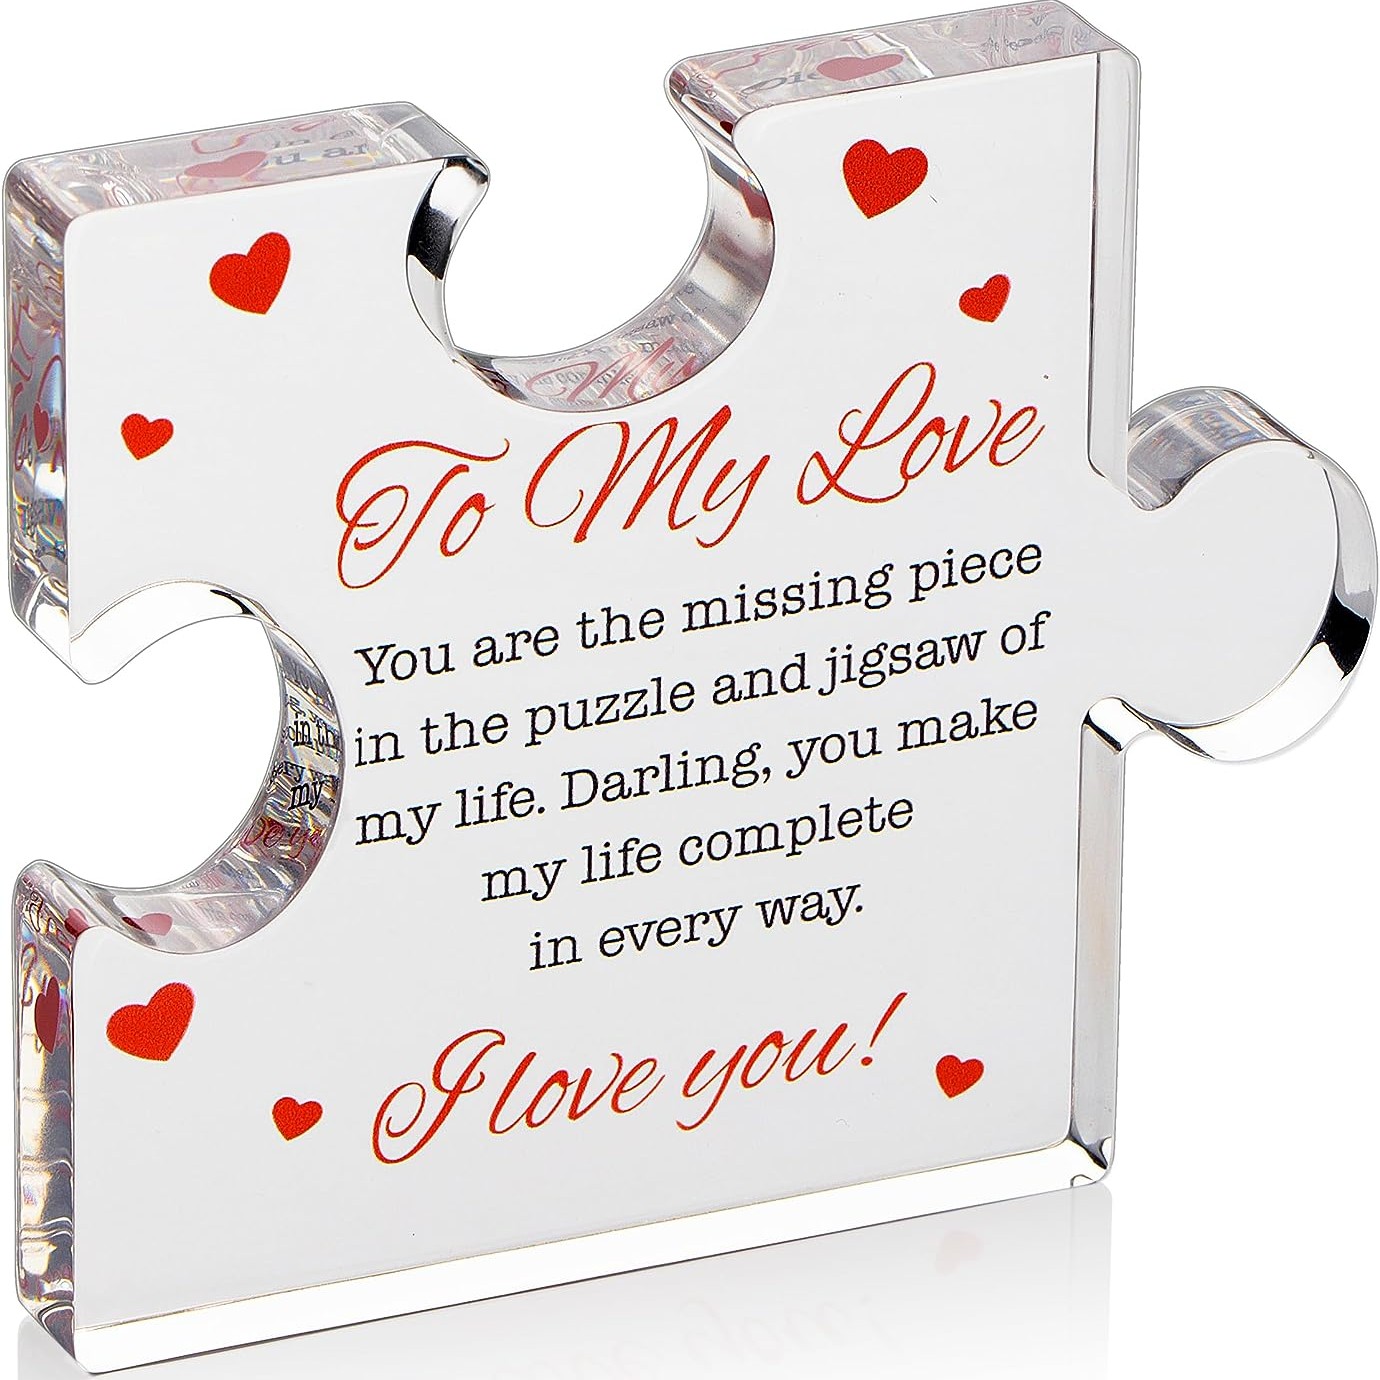 Te quiero mi amor: libro del amor sobre razones por las que amas a tu  esposa, esposo, un regalo perfecto para cumpleaños, día de San Valentín,  boda 